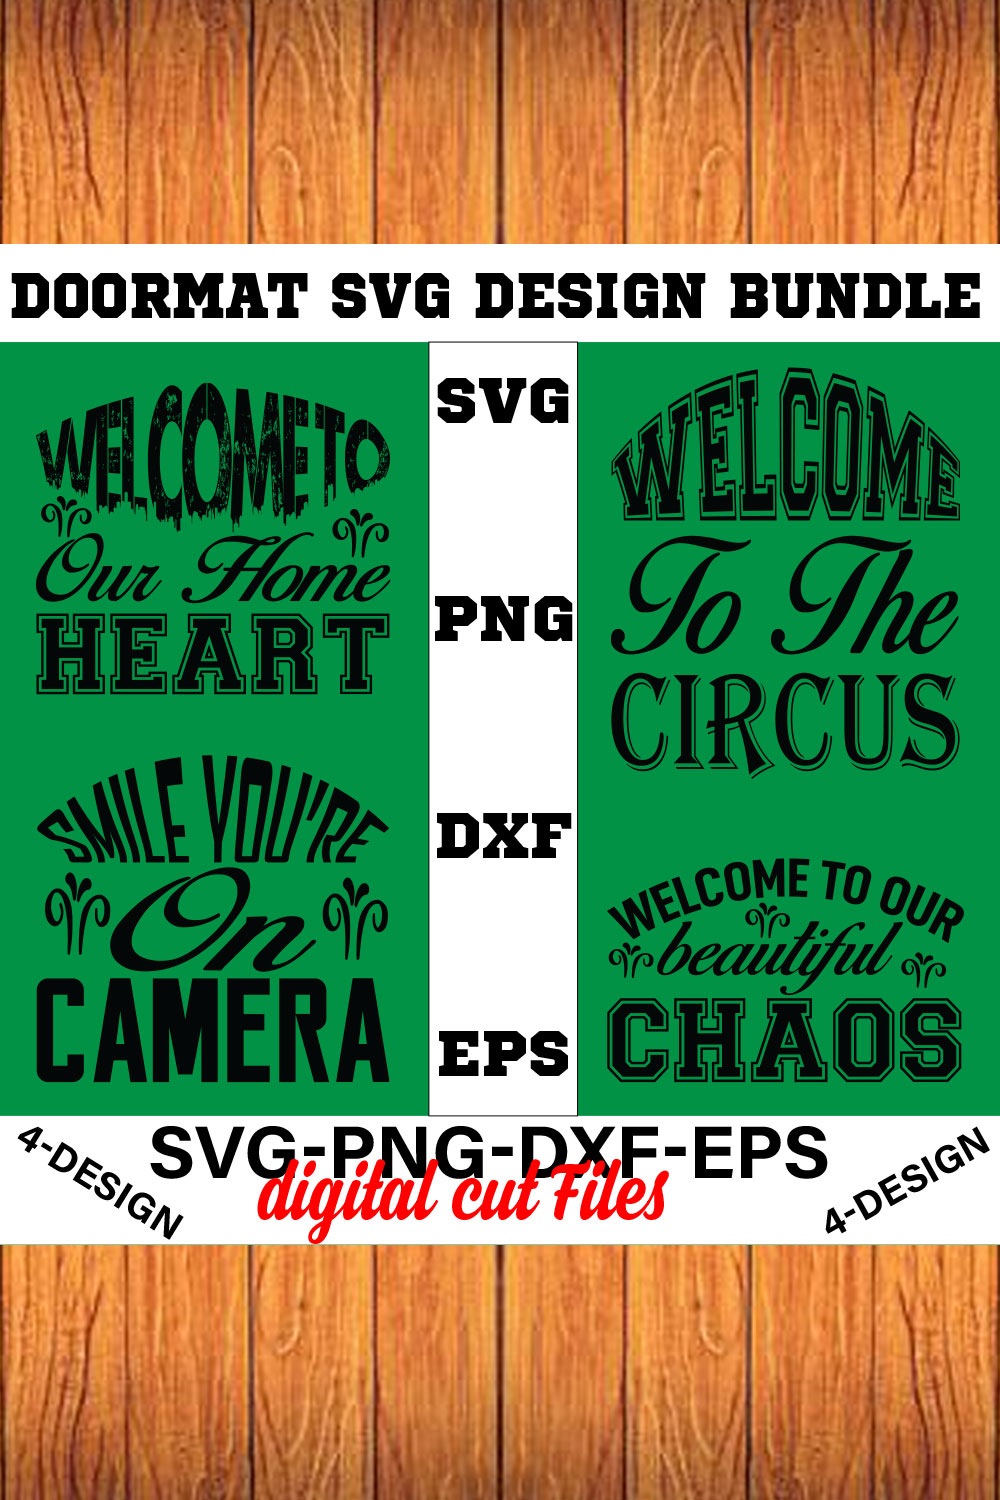 Doormat Quote Designs SVG Cut File Bundle for Cricut Volume-01 pinterest preview image.